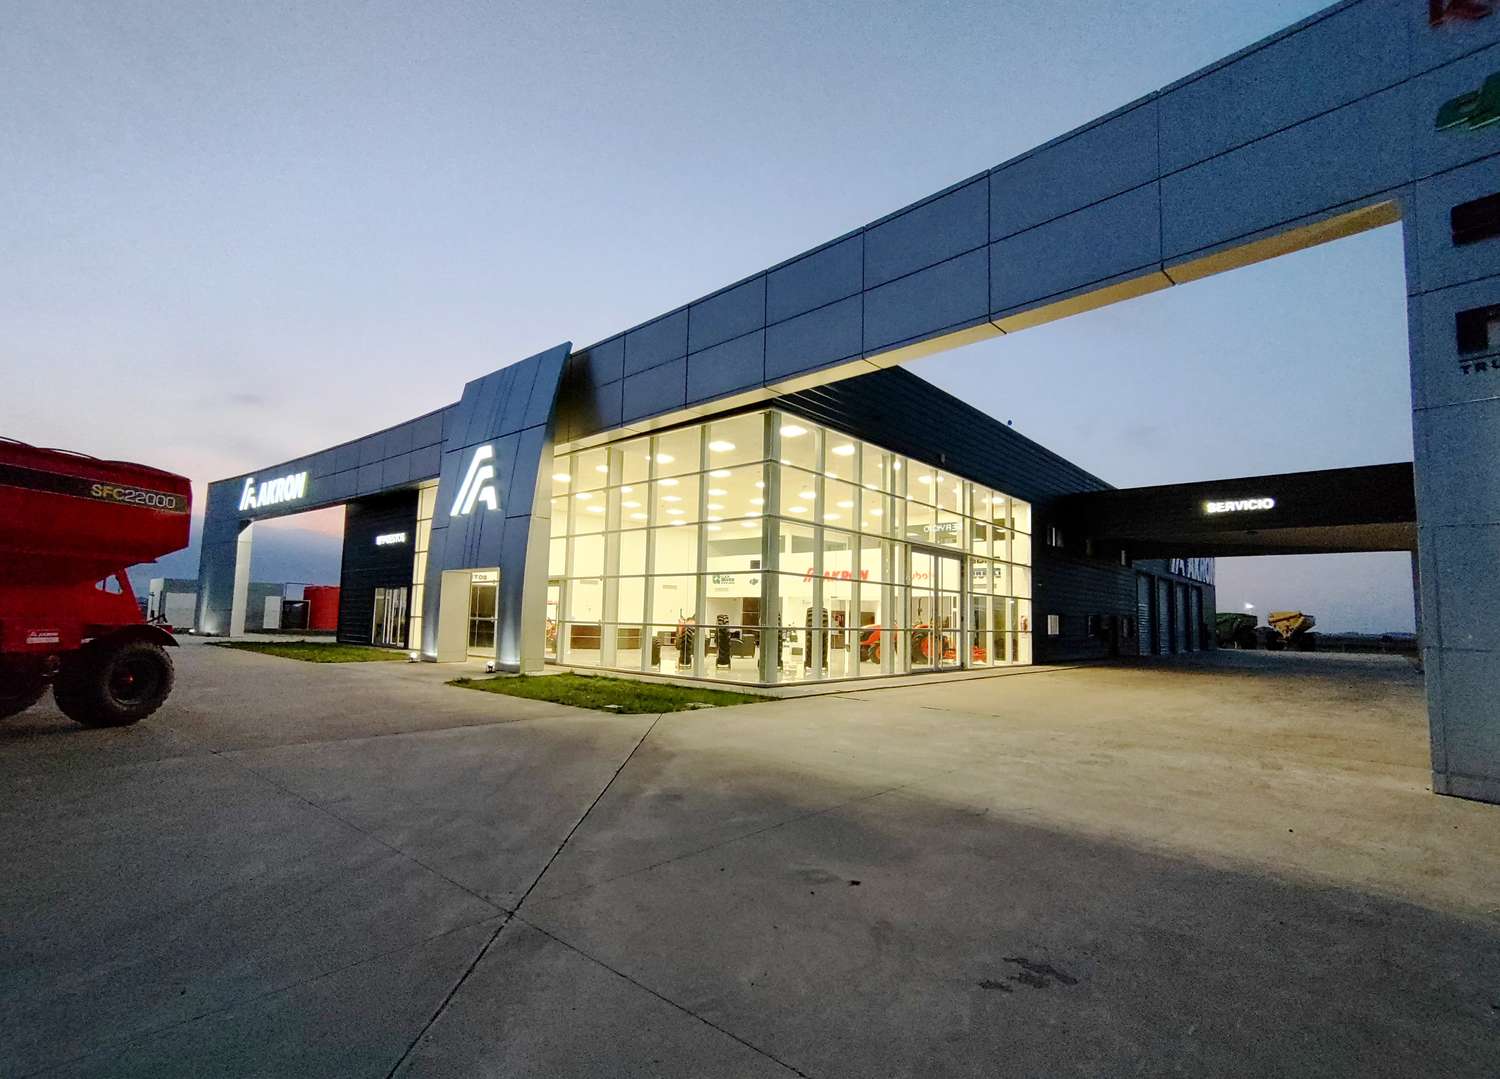 Akron abre nuevo centro regional de ventas en Pergamino